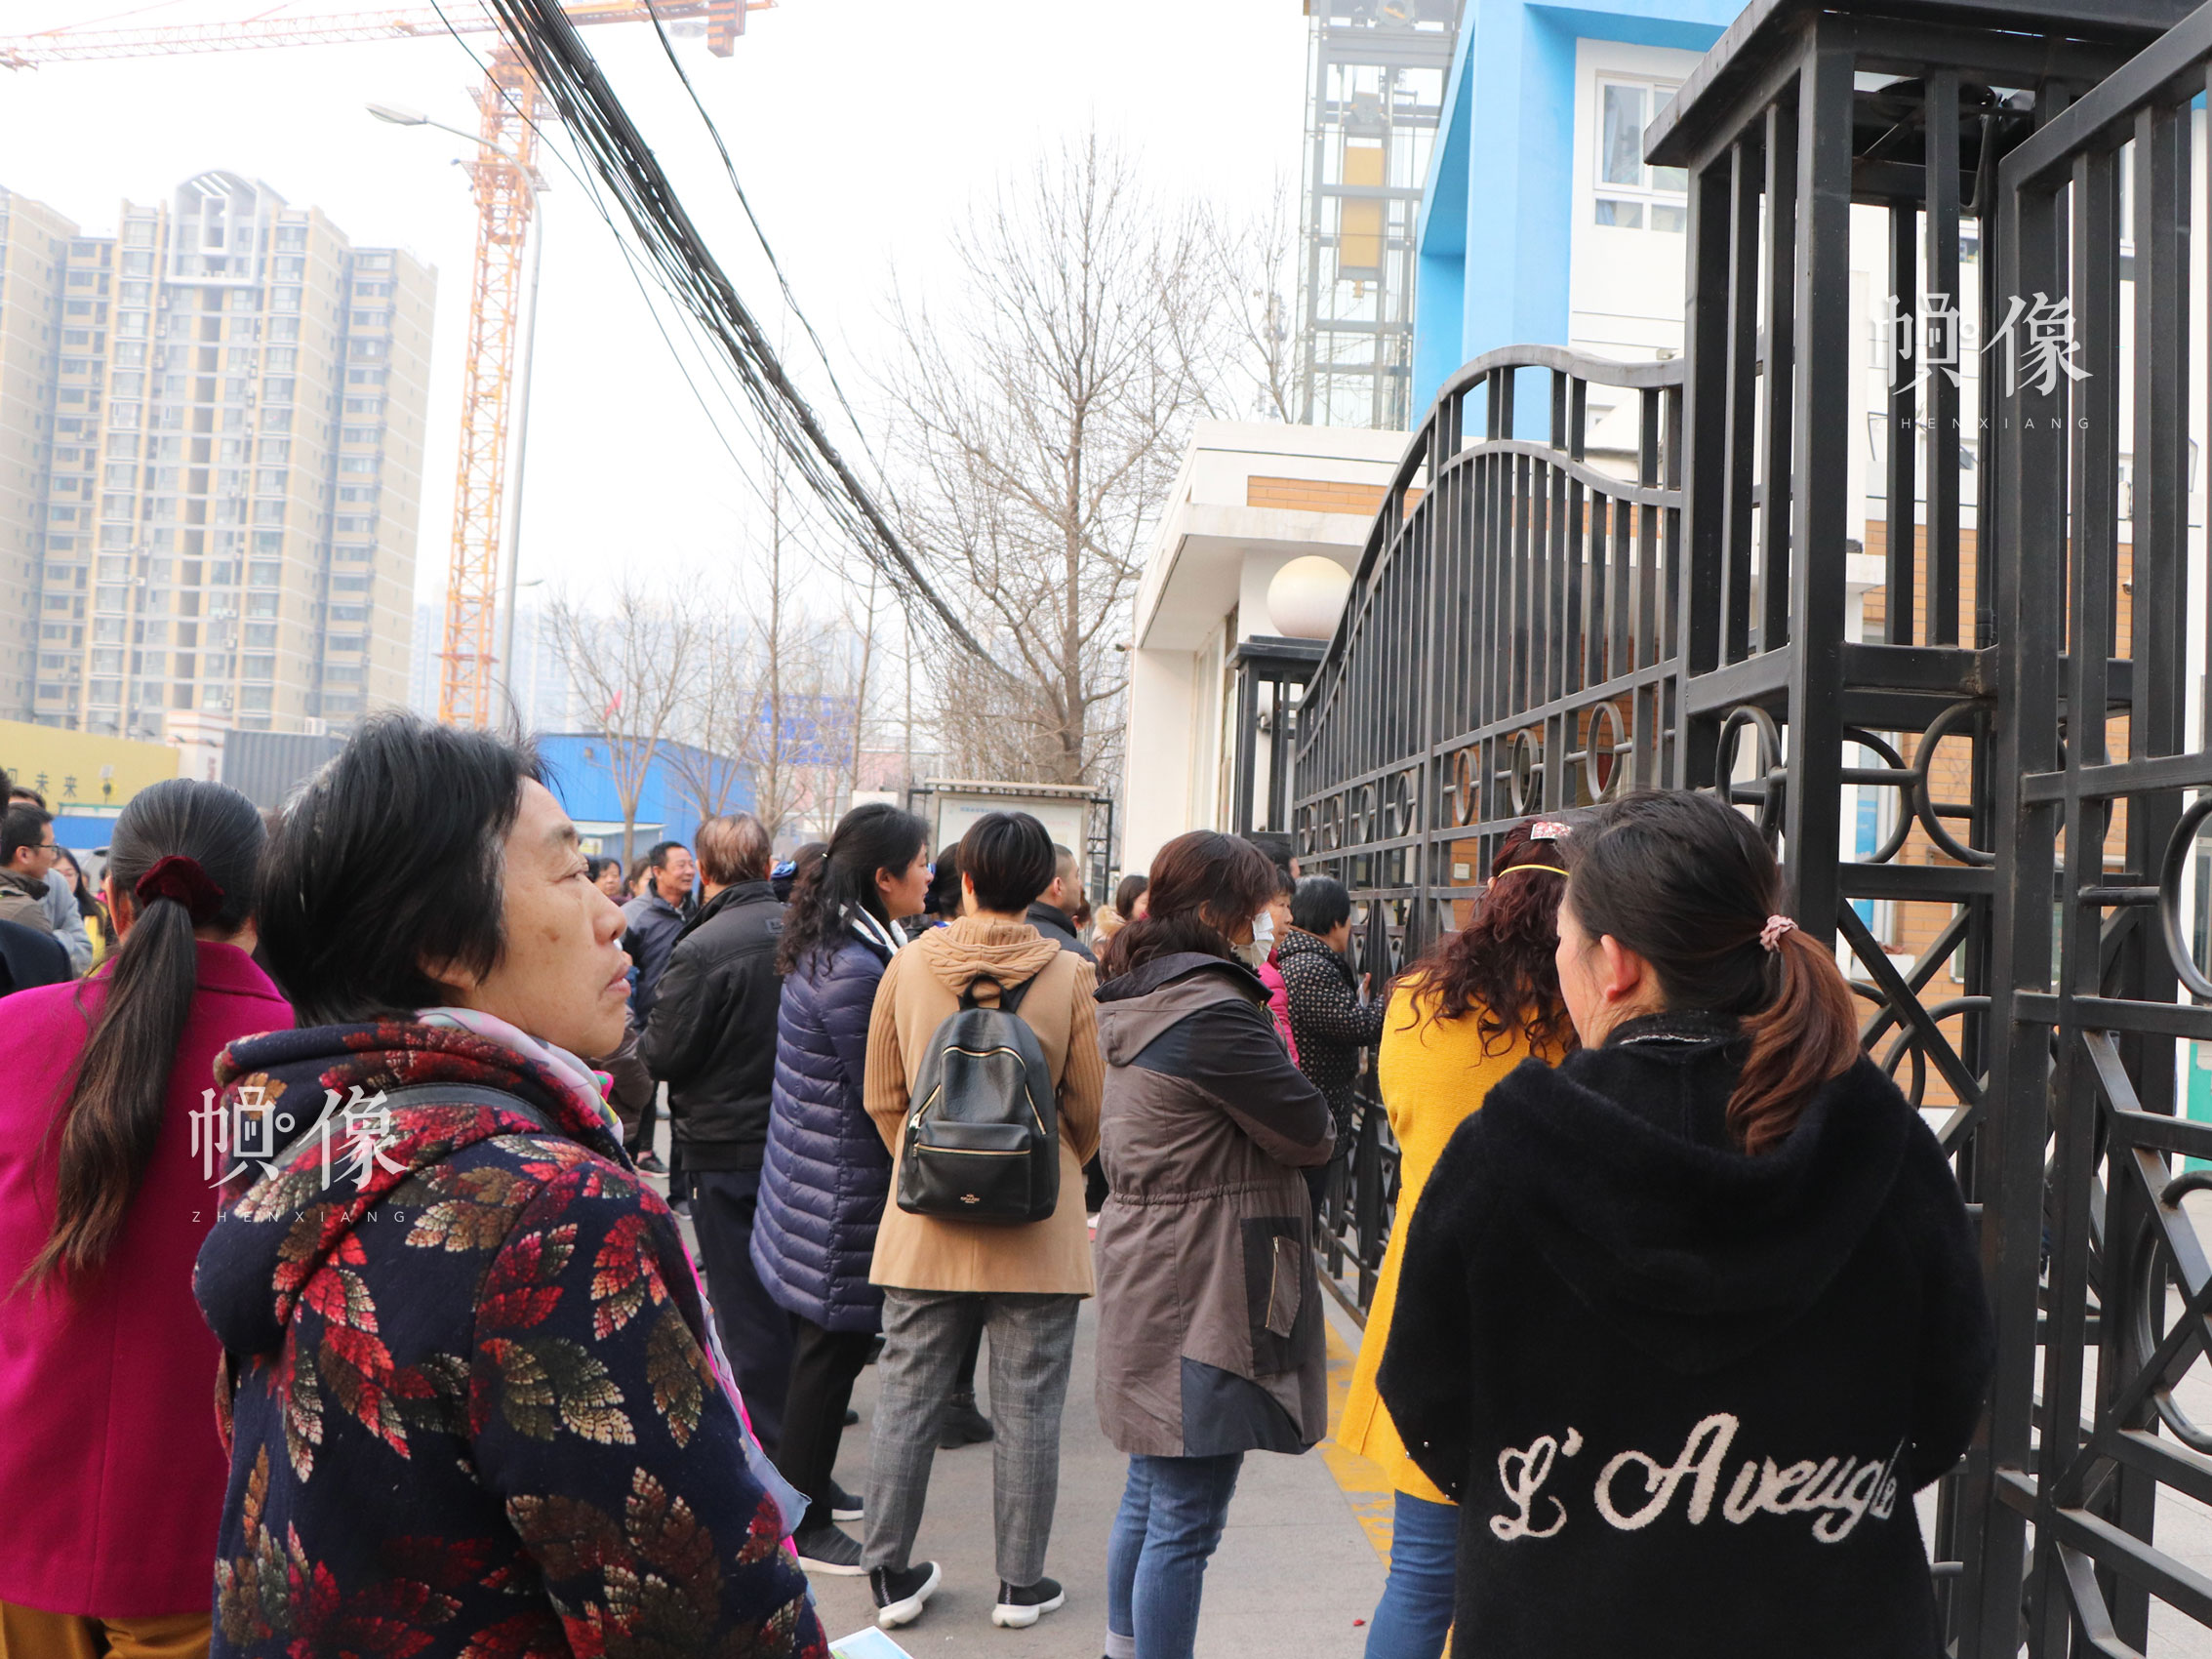 北京市丰台区某小学校门口,正值放学时间,家长们在学校外面等待接孩子